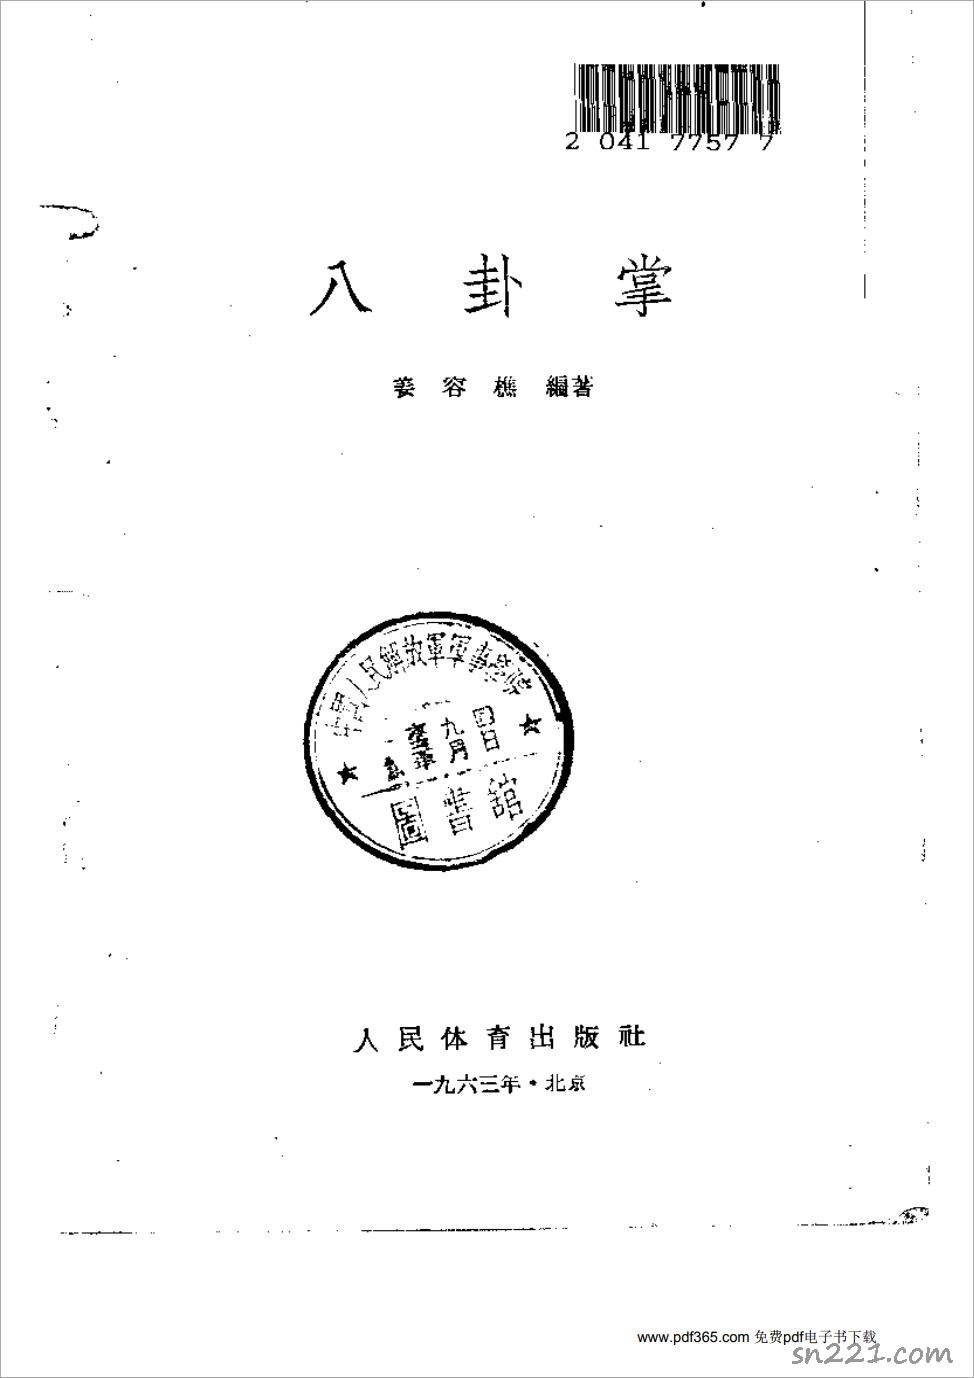 薑容樵-八卦掌153頁.pdf